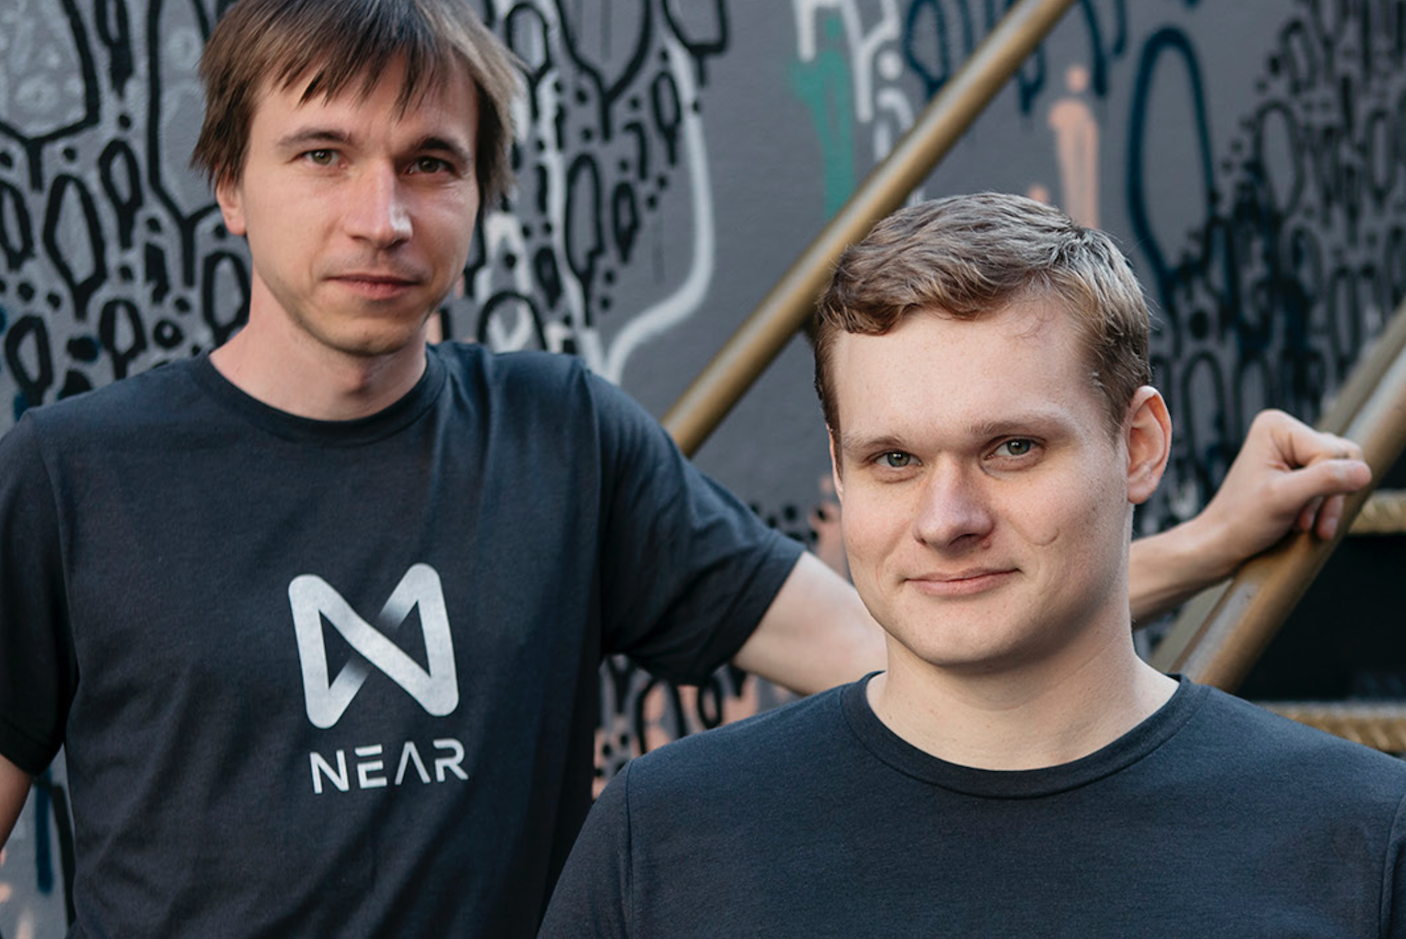 NEAR Protocol recauda $21.6M de A16Z y lanza su MainNet, superando Ethereum 2.0 | TechCrunch 